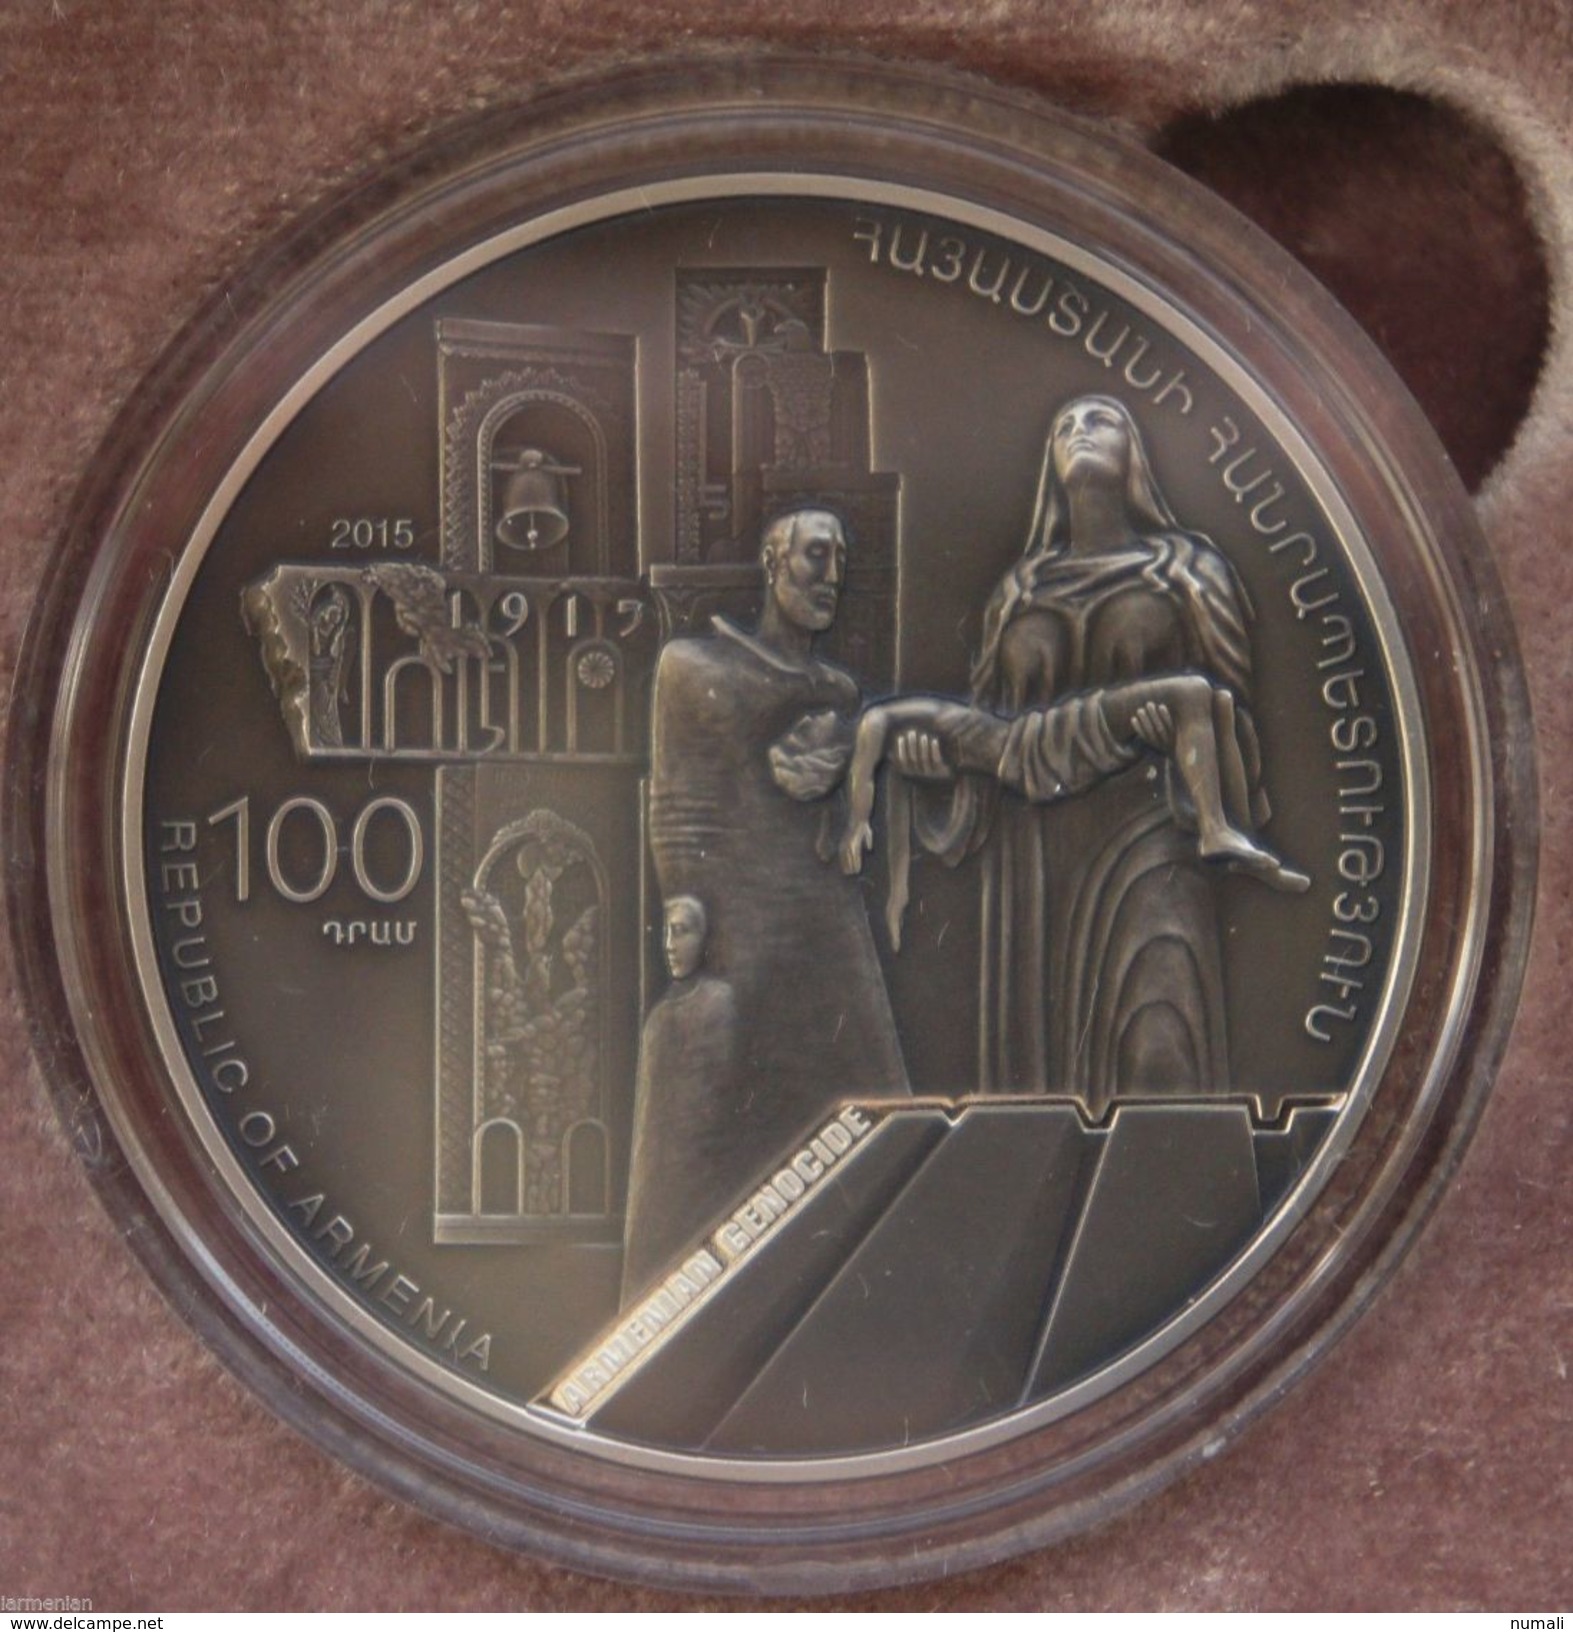 ARMENIA 100 DRAM SILVER COIN PROOF 2015 RARE Centenary Of The Armenian Genocide - Arménie